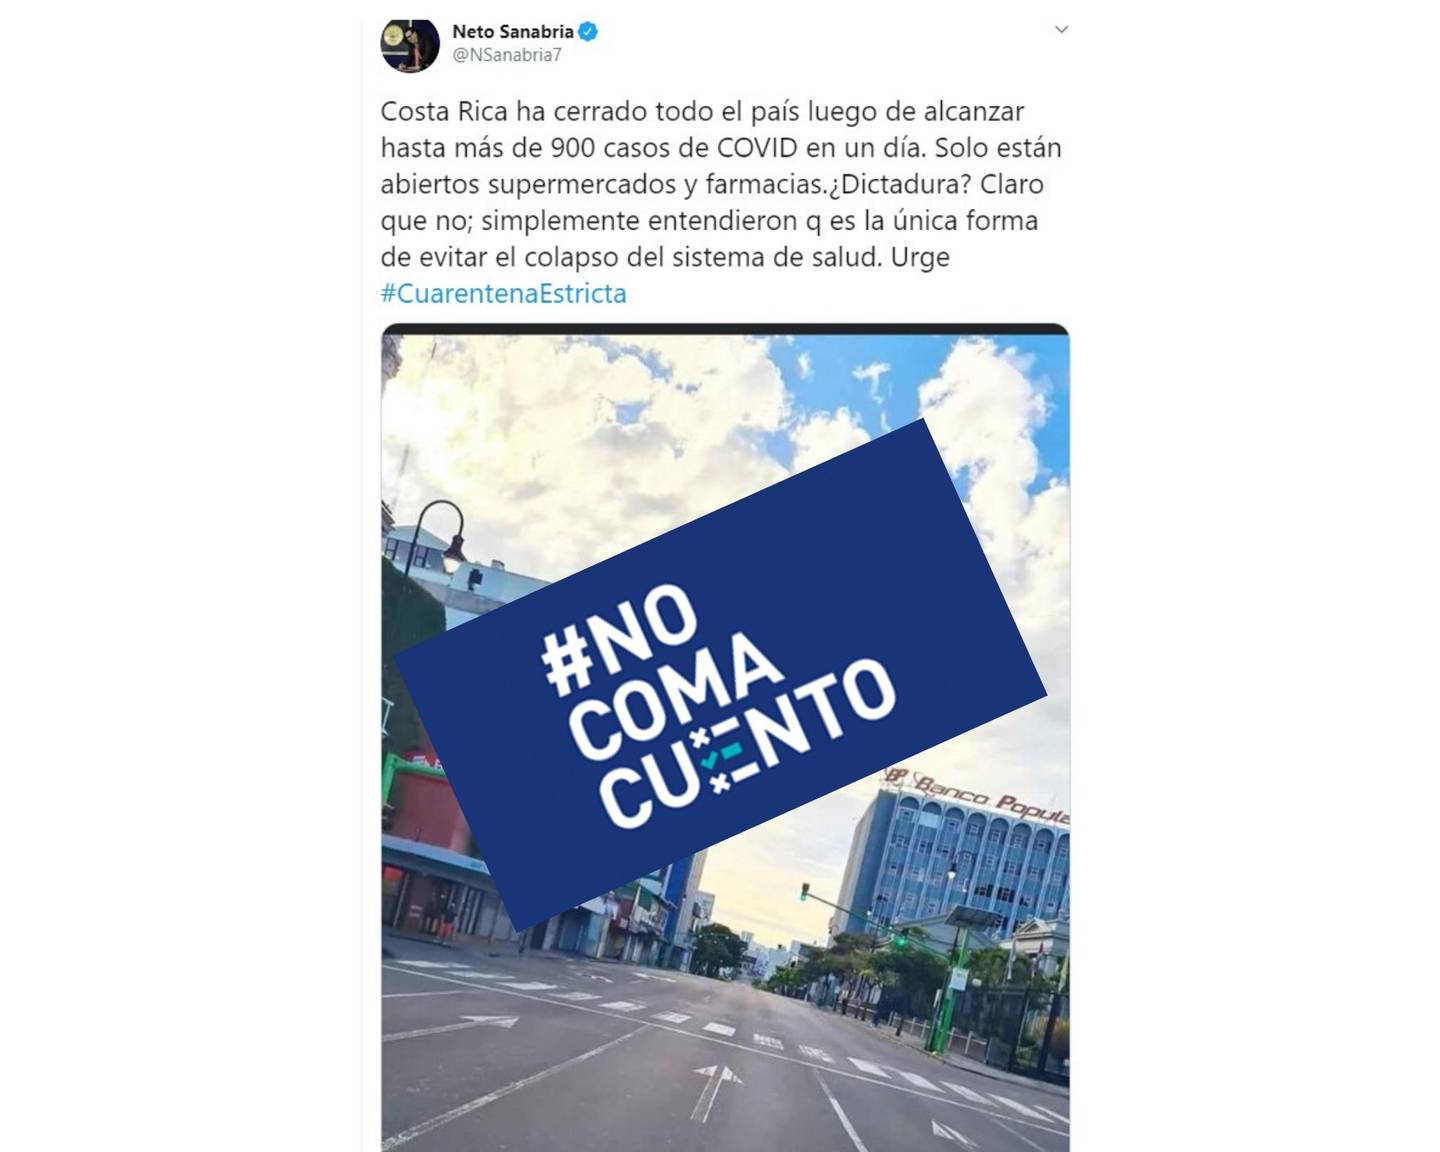 Publicación en Twitter del jefe de prensa El Salvador, Ernestro 'Neto' Sanabria.